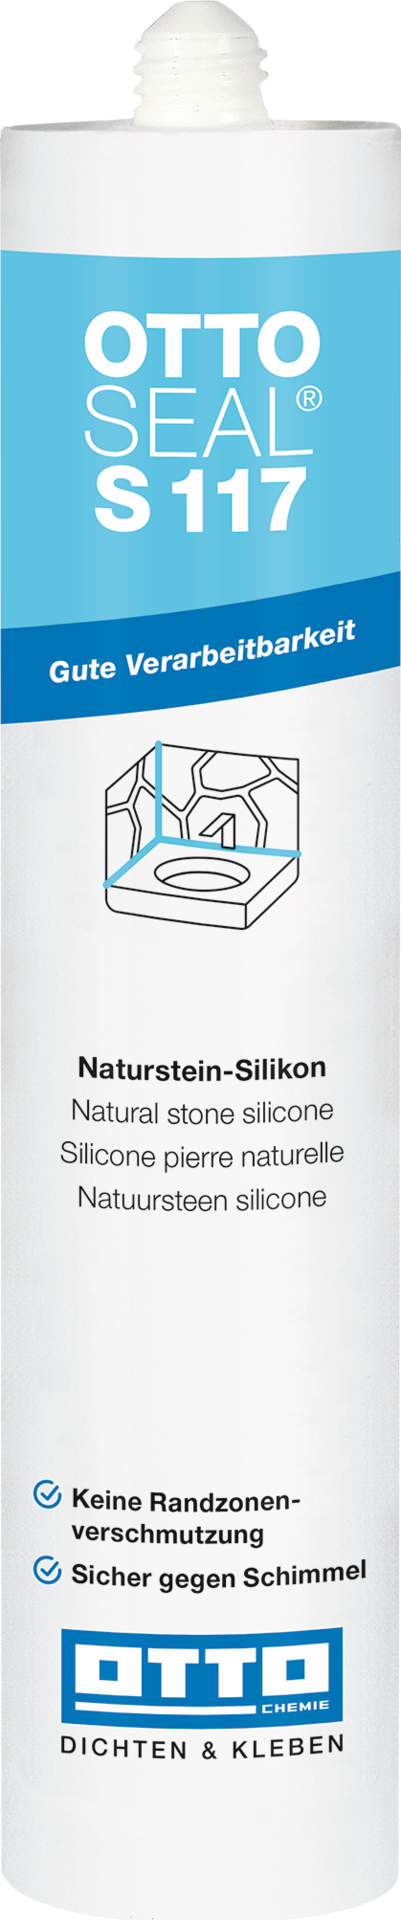 OTTOSEAL® S117 Das Standard-Naturstein-Silicon 